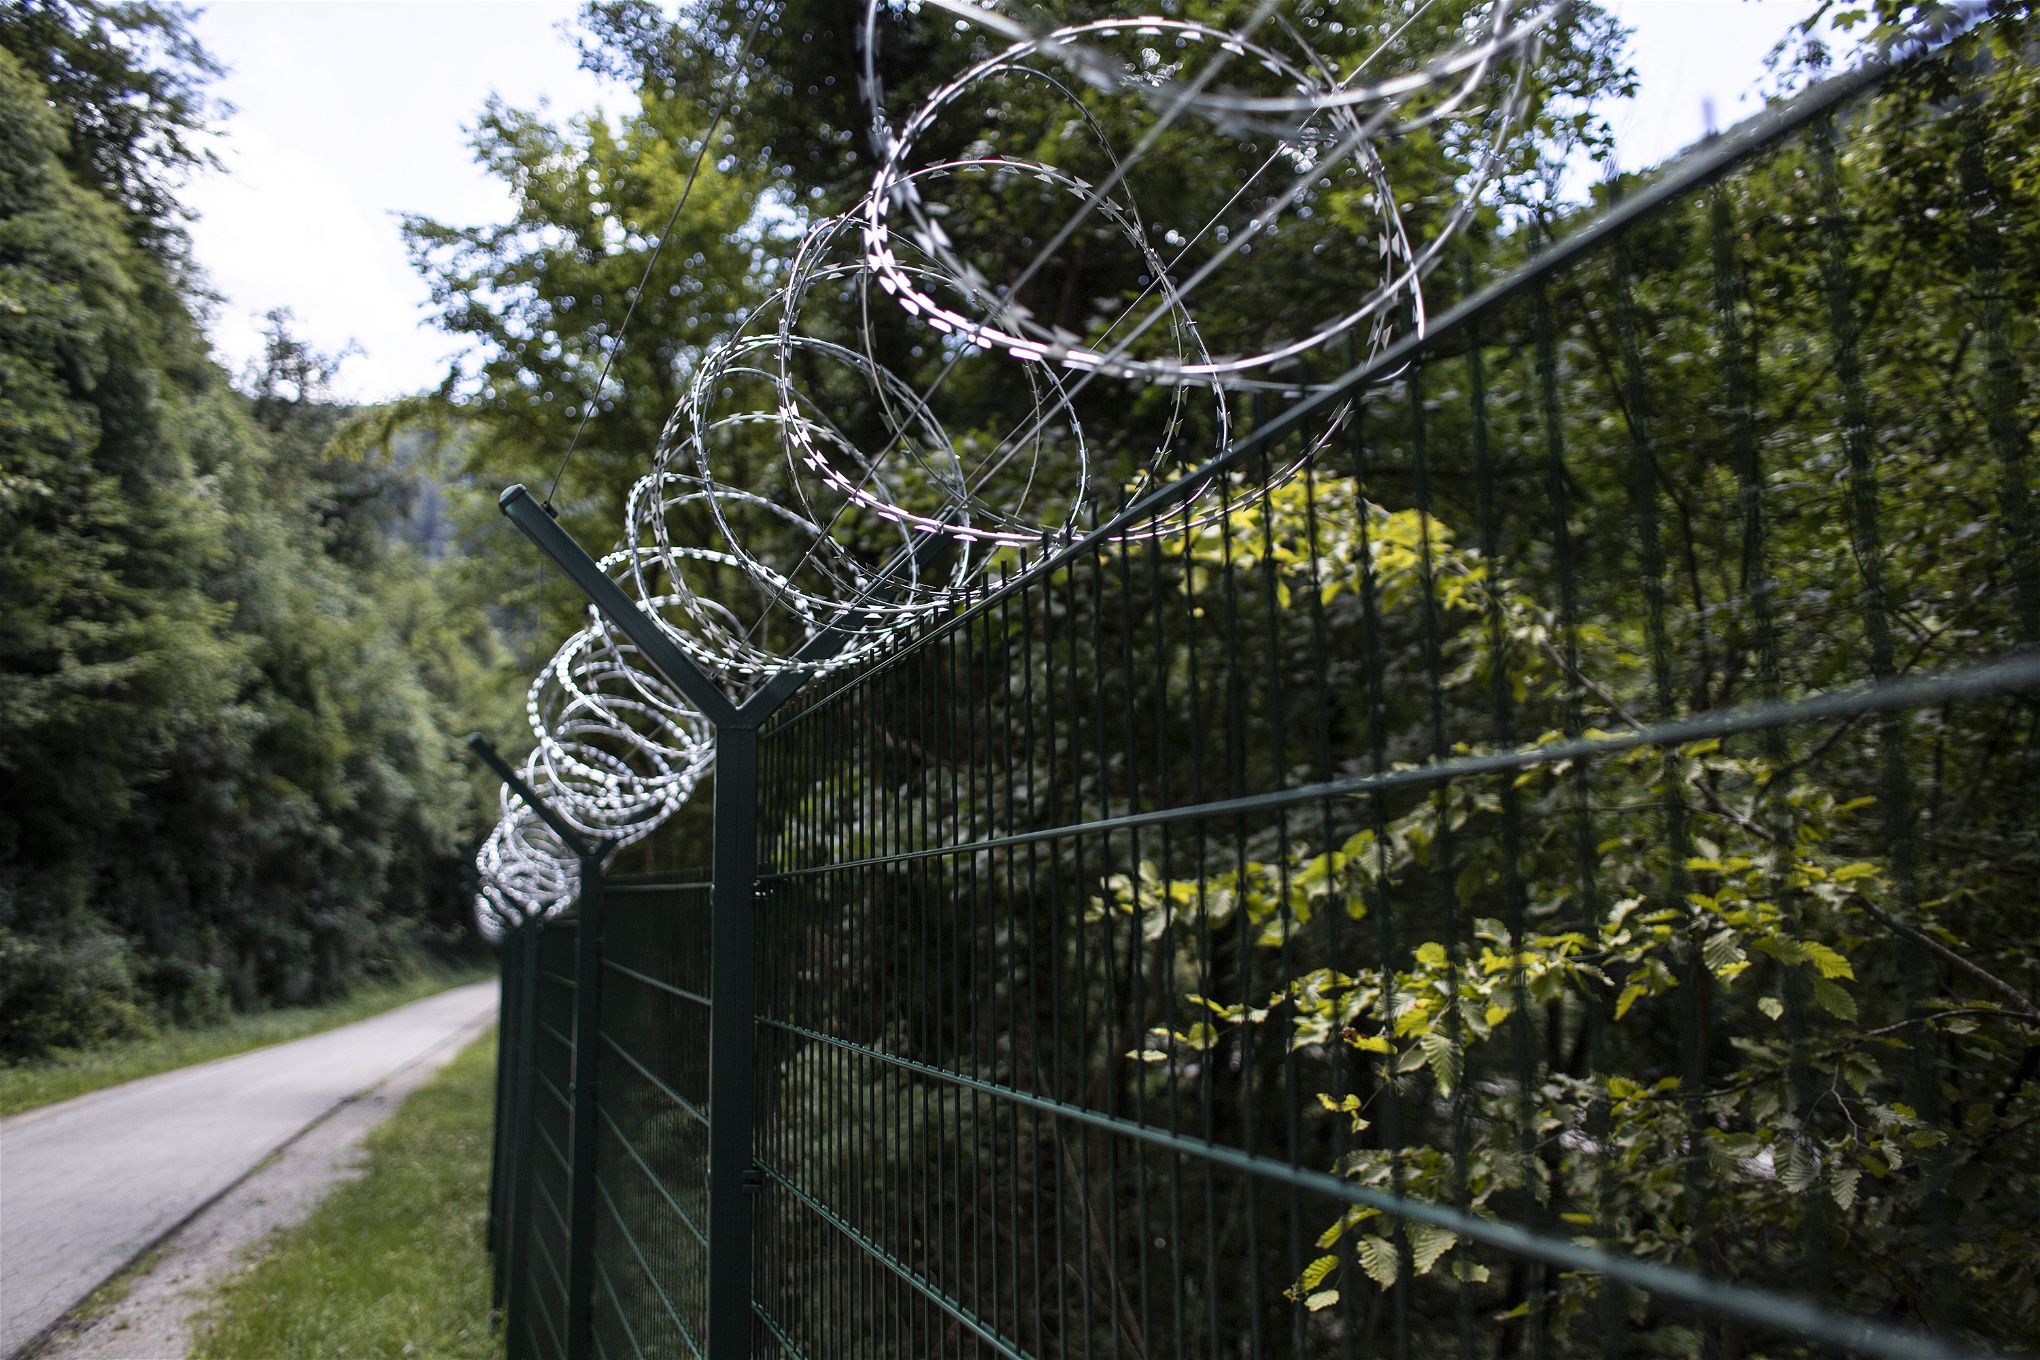 Foto: Daniele NapolitanoEn ny barriär har uppförts som skiljer Slovenien och Kroatien åt.